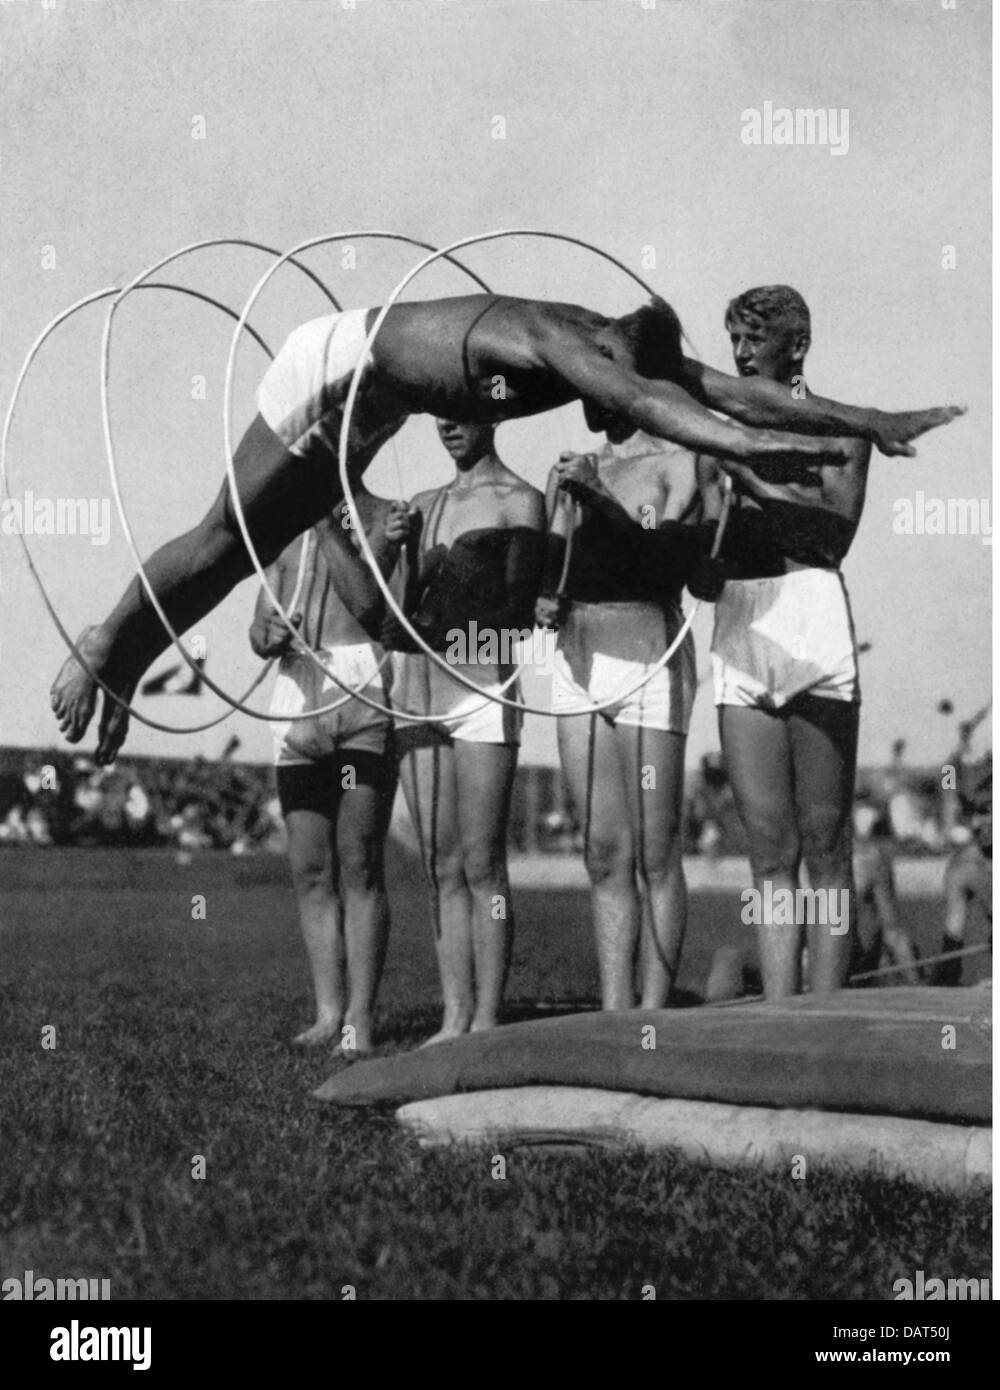 Nazismo / nazionalsocialismo, sport, manifestazione sportiva durante la mostra Reichsnaehrstand, Monaco, 30.5. - 6.6.1937, diritti-aggiuntivi-non-disponibili Foto Stock